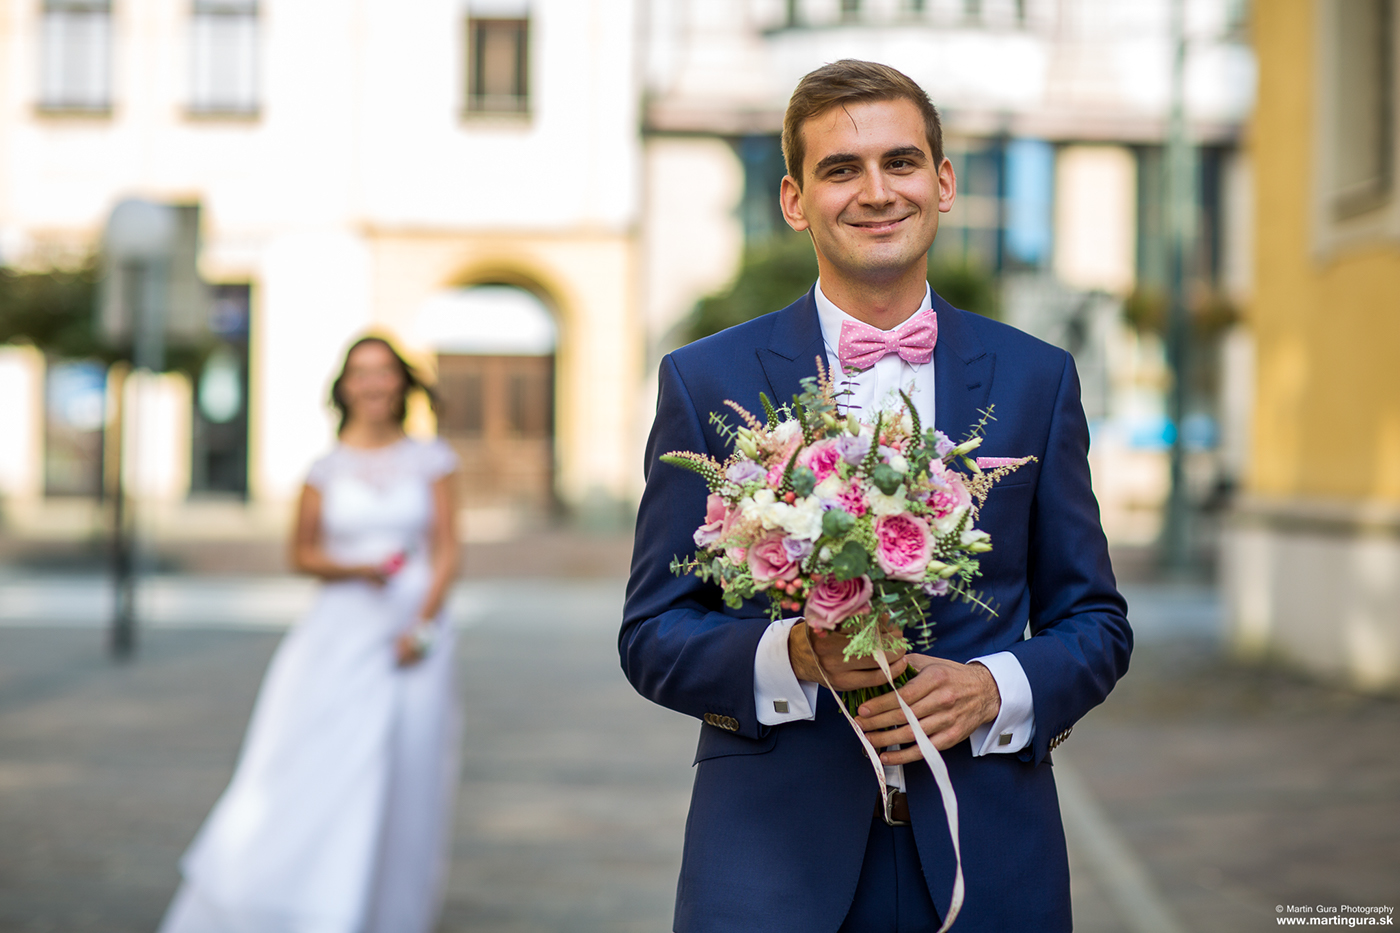 wedding svadba slovakia presov laska Love foto photo